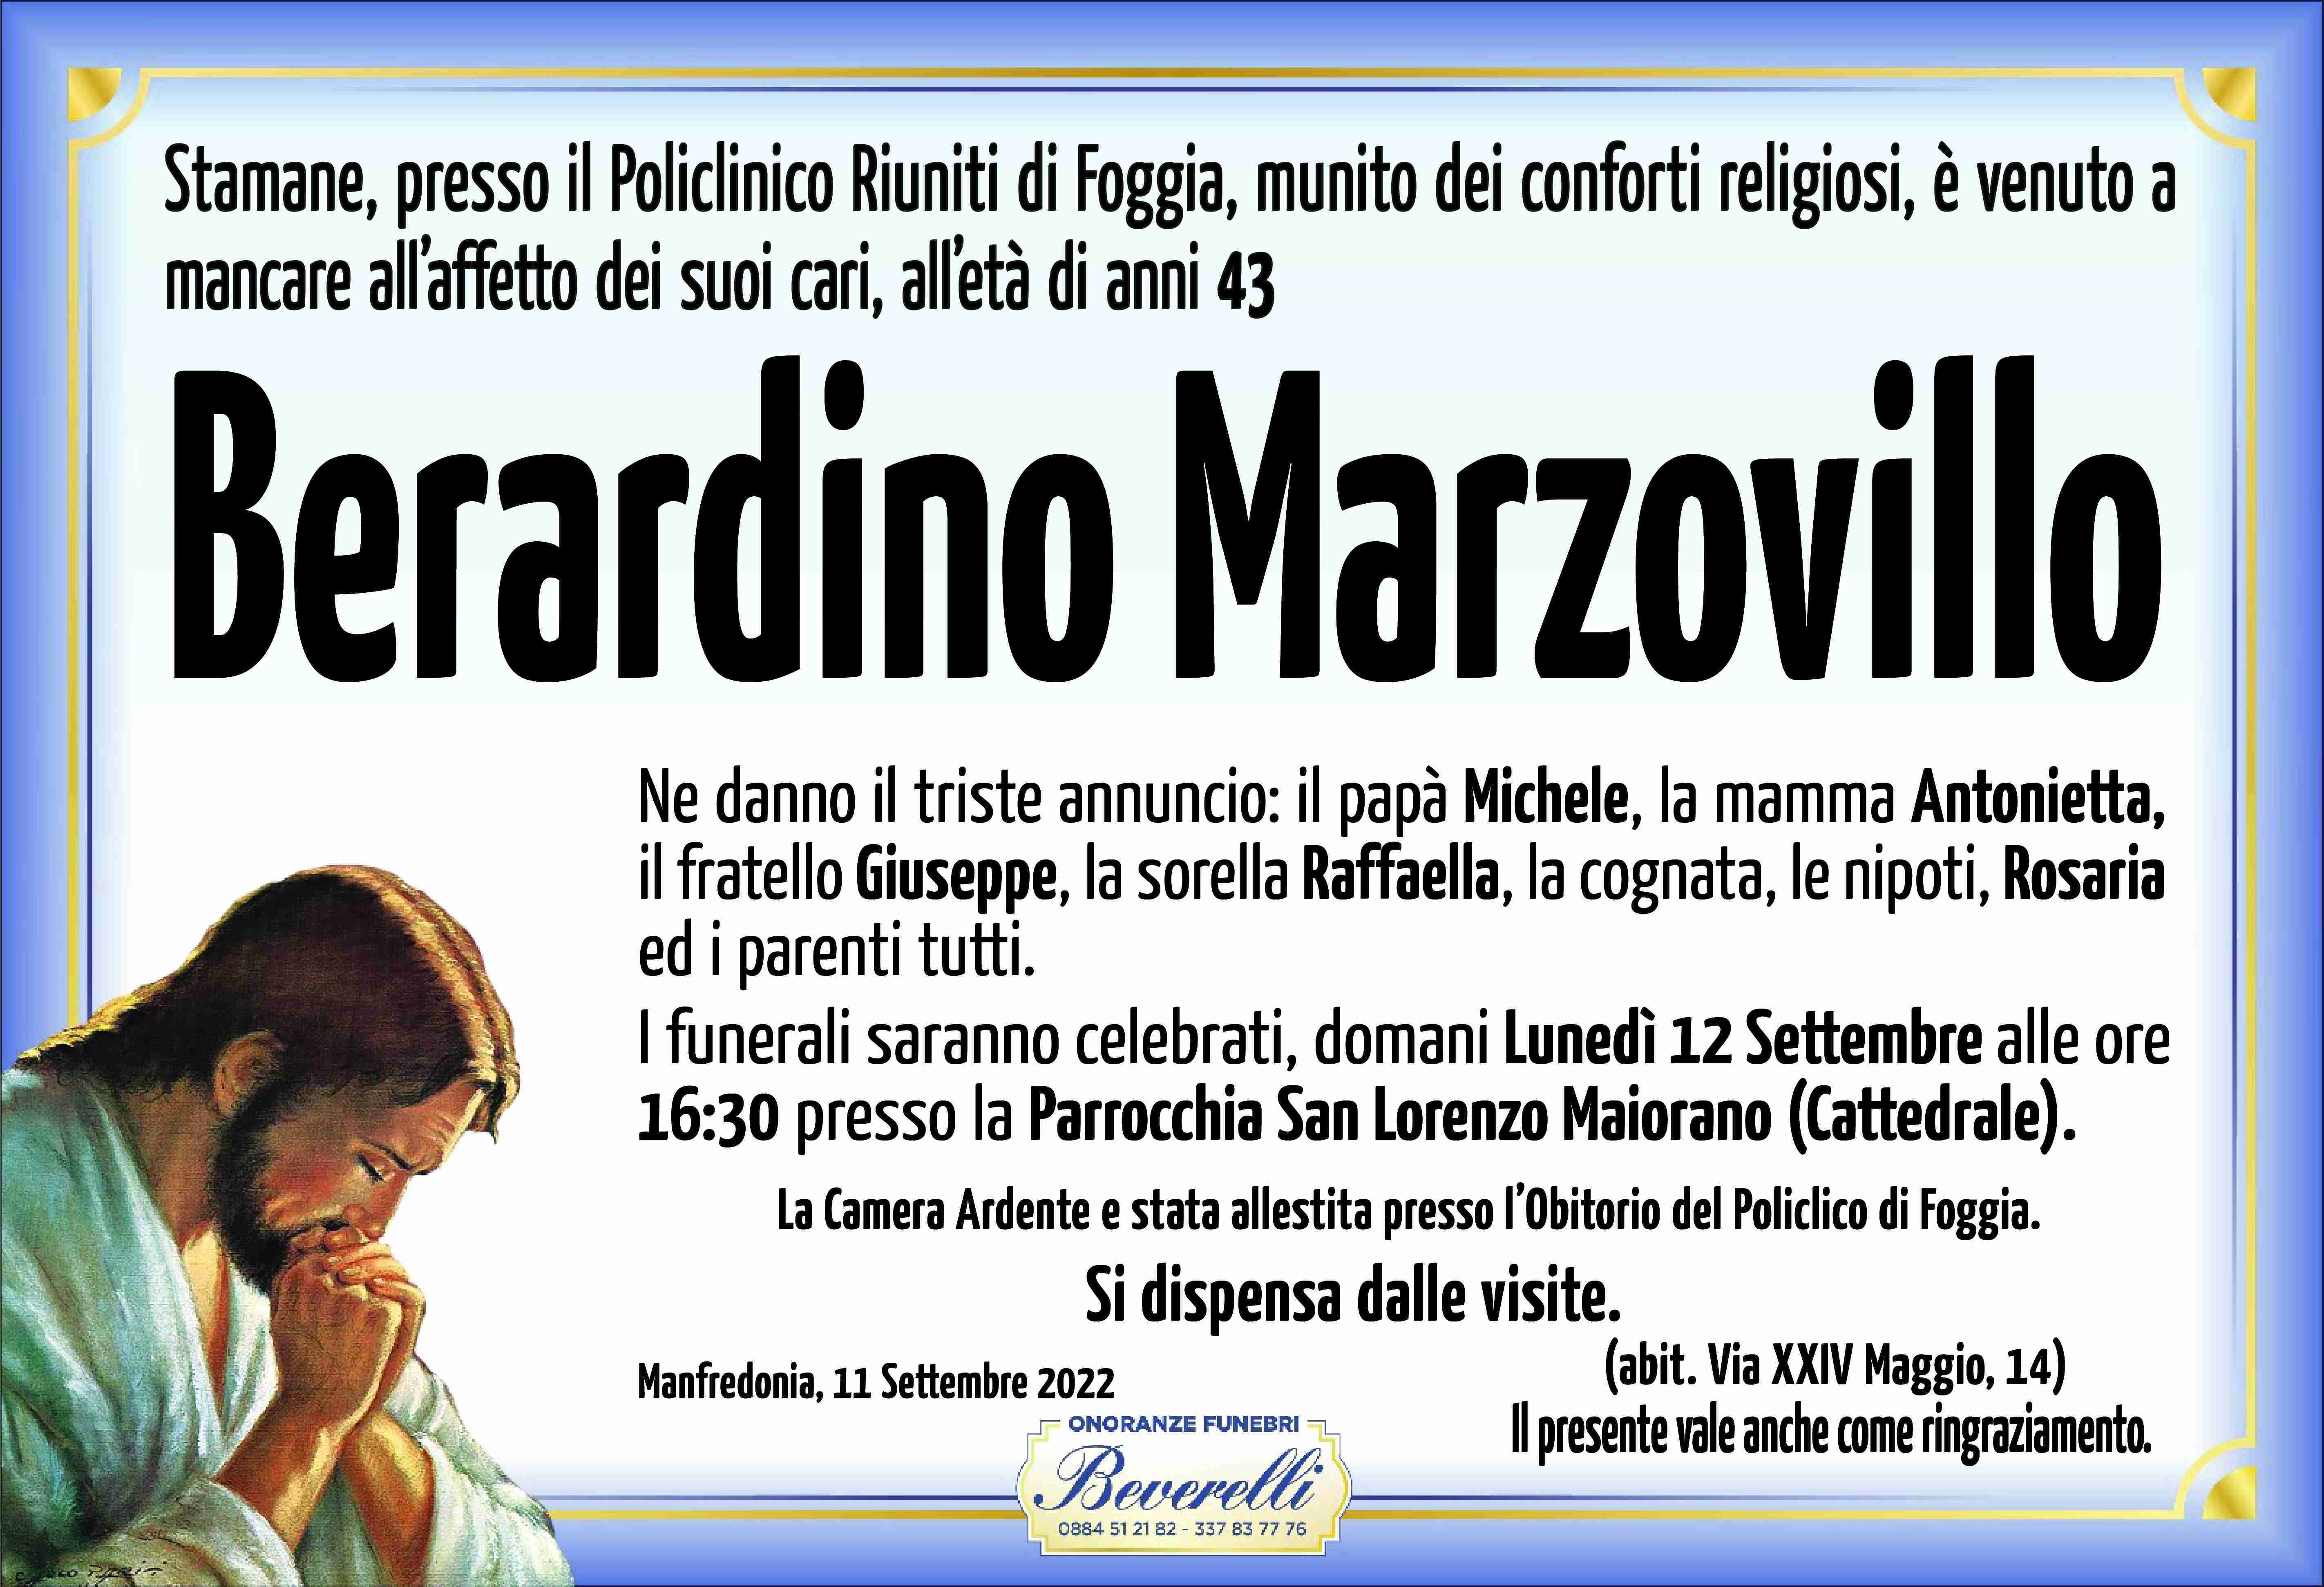 Berardino Marzovillo